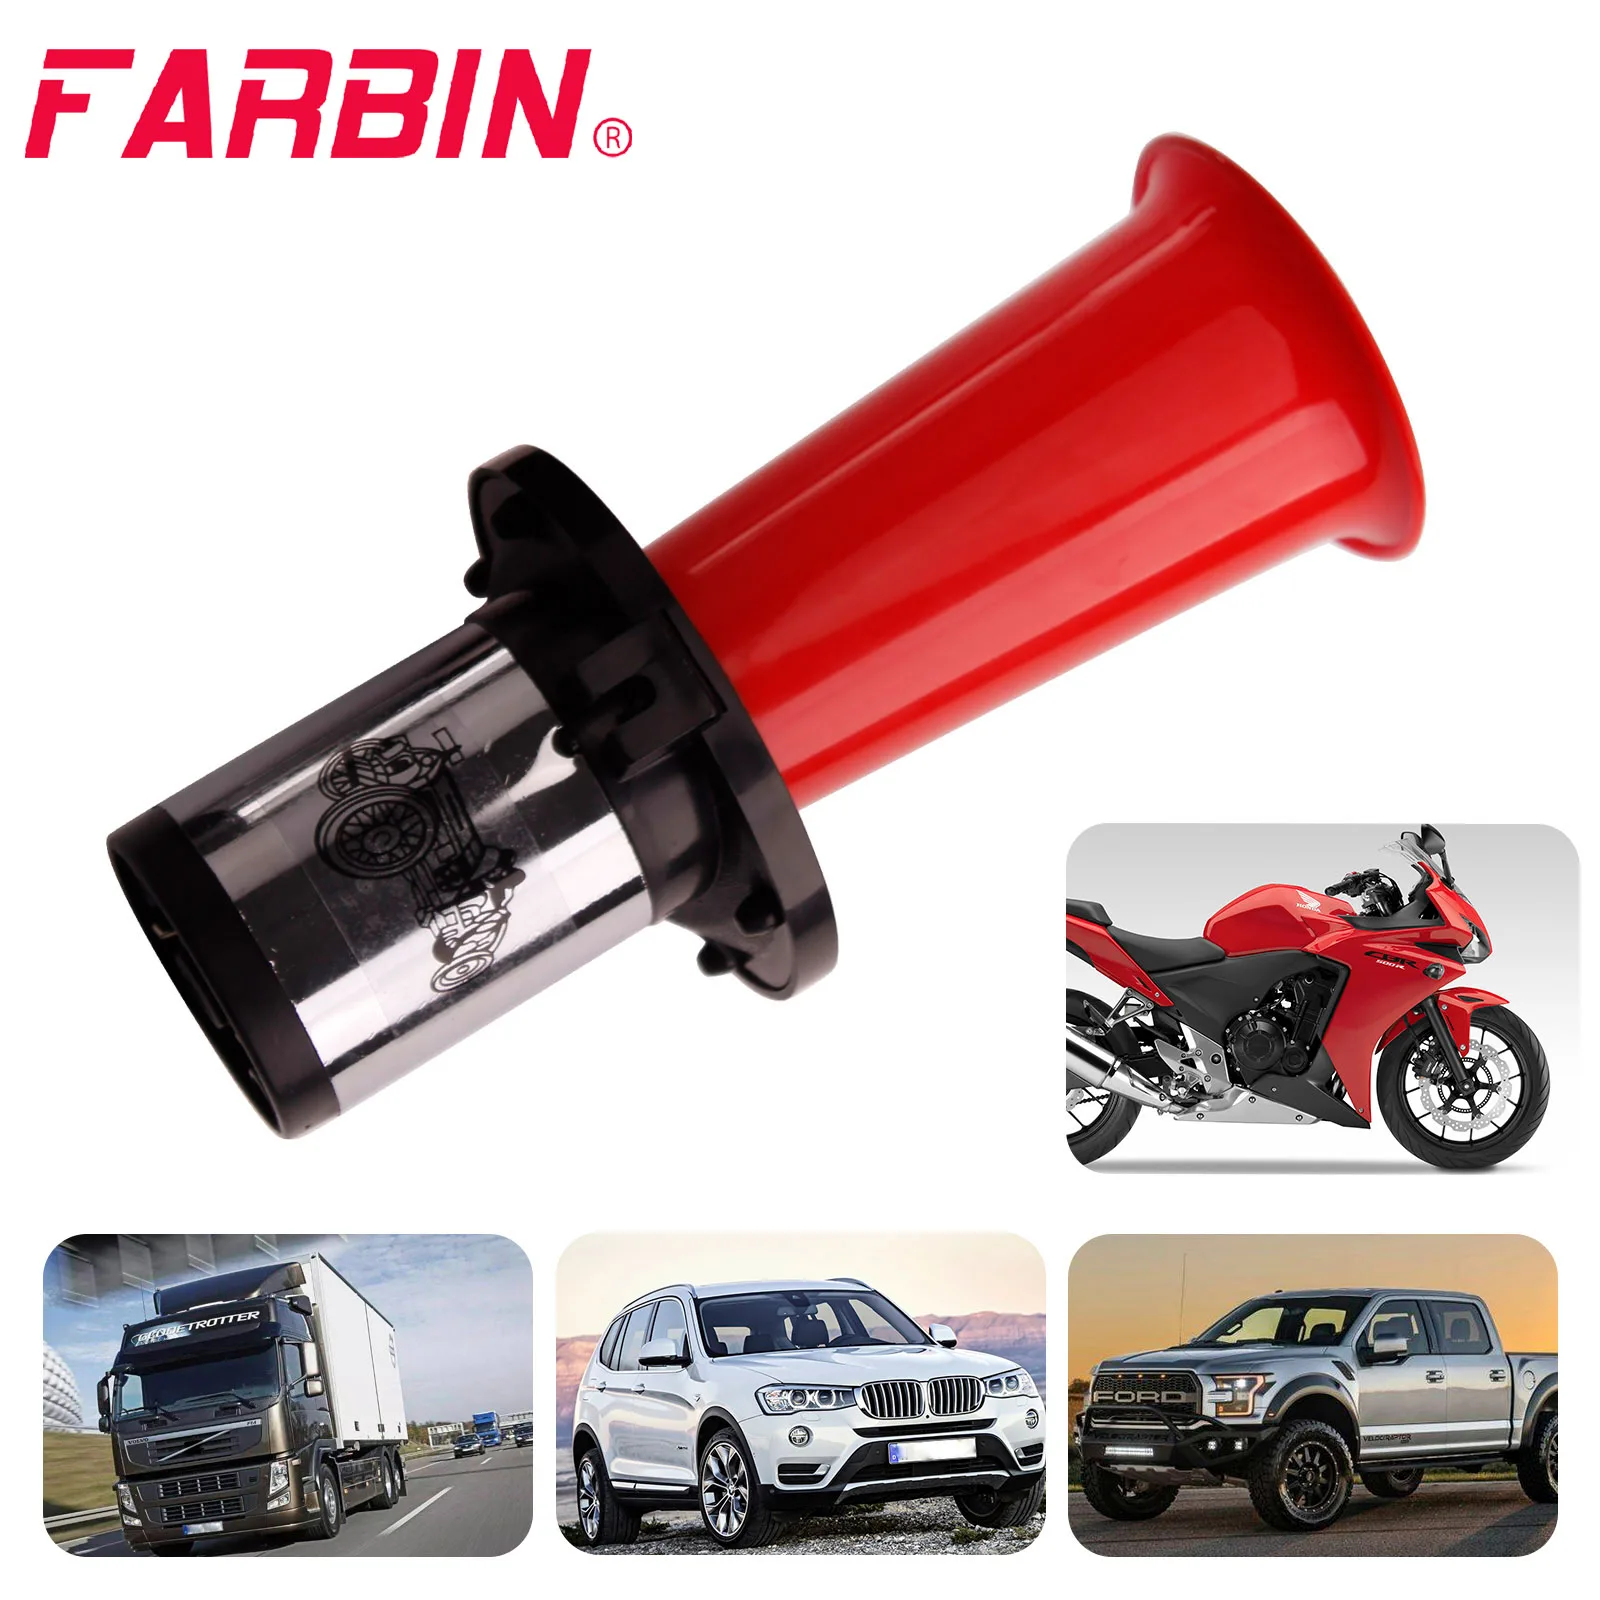 FARBIN Vintage OO-GA Oogah Chrome Classical 12V 110DB Car Horn Universal  Super Loud Air Horn For Car Truck Boat Supplies